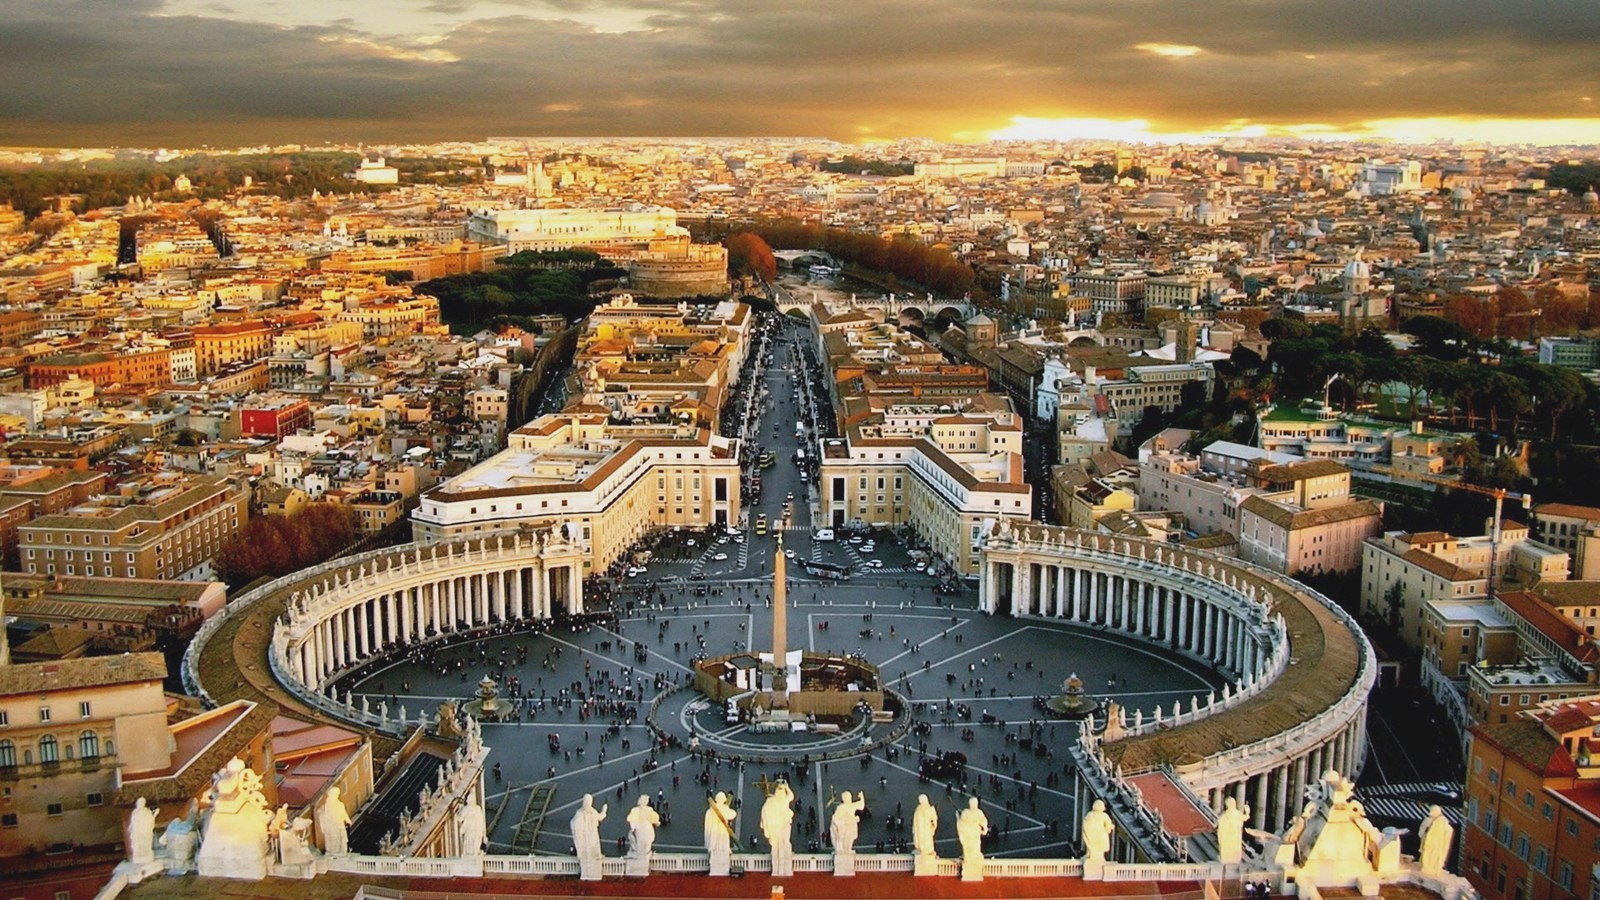 Kdo vládne ve Vatikánu?